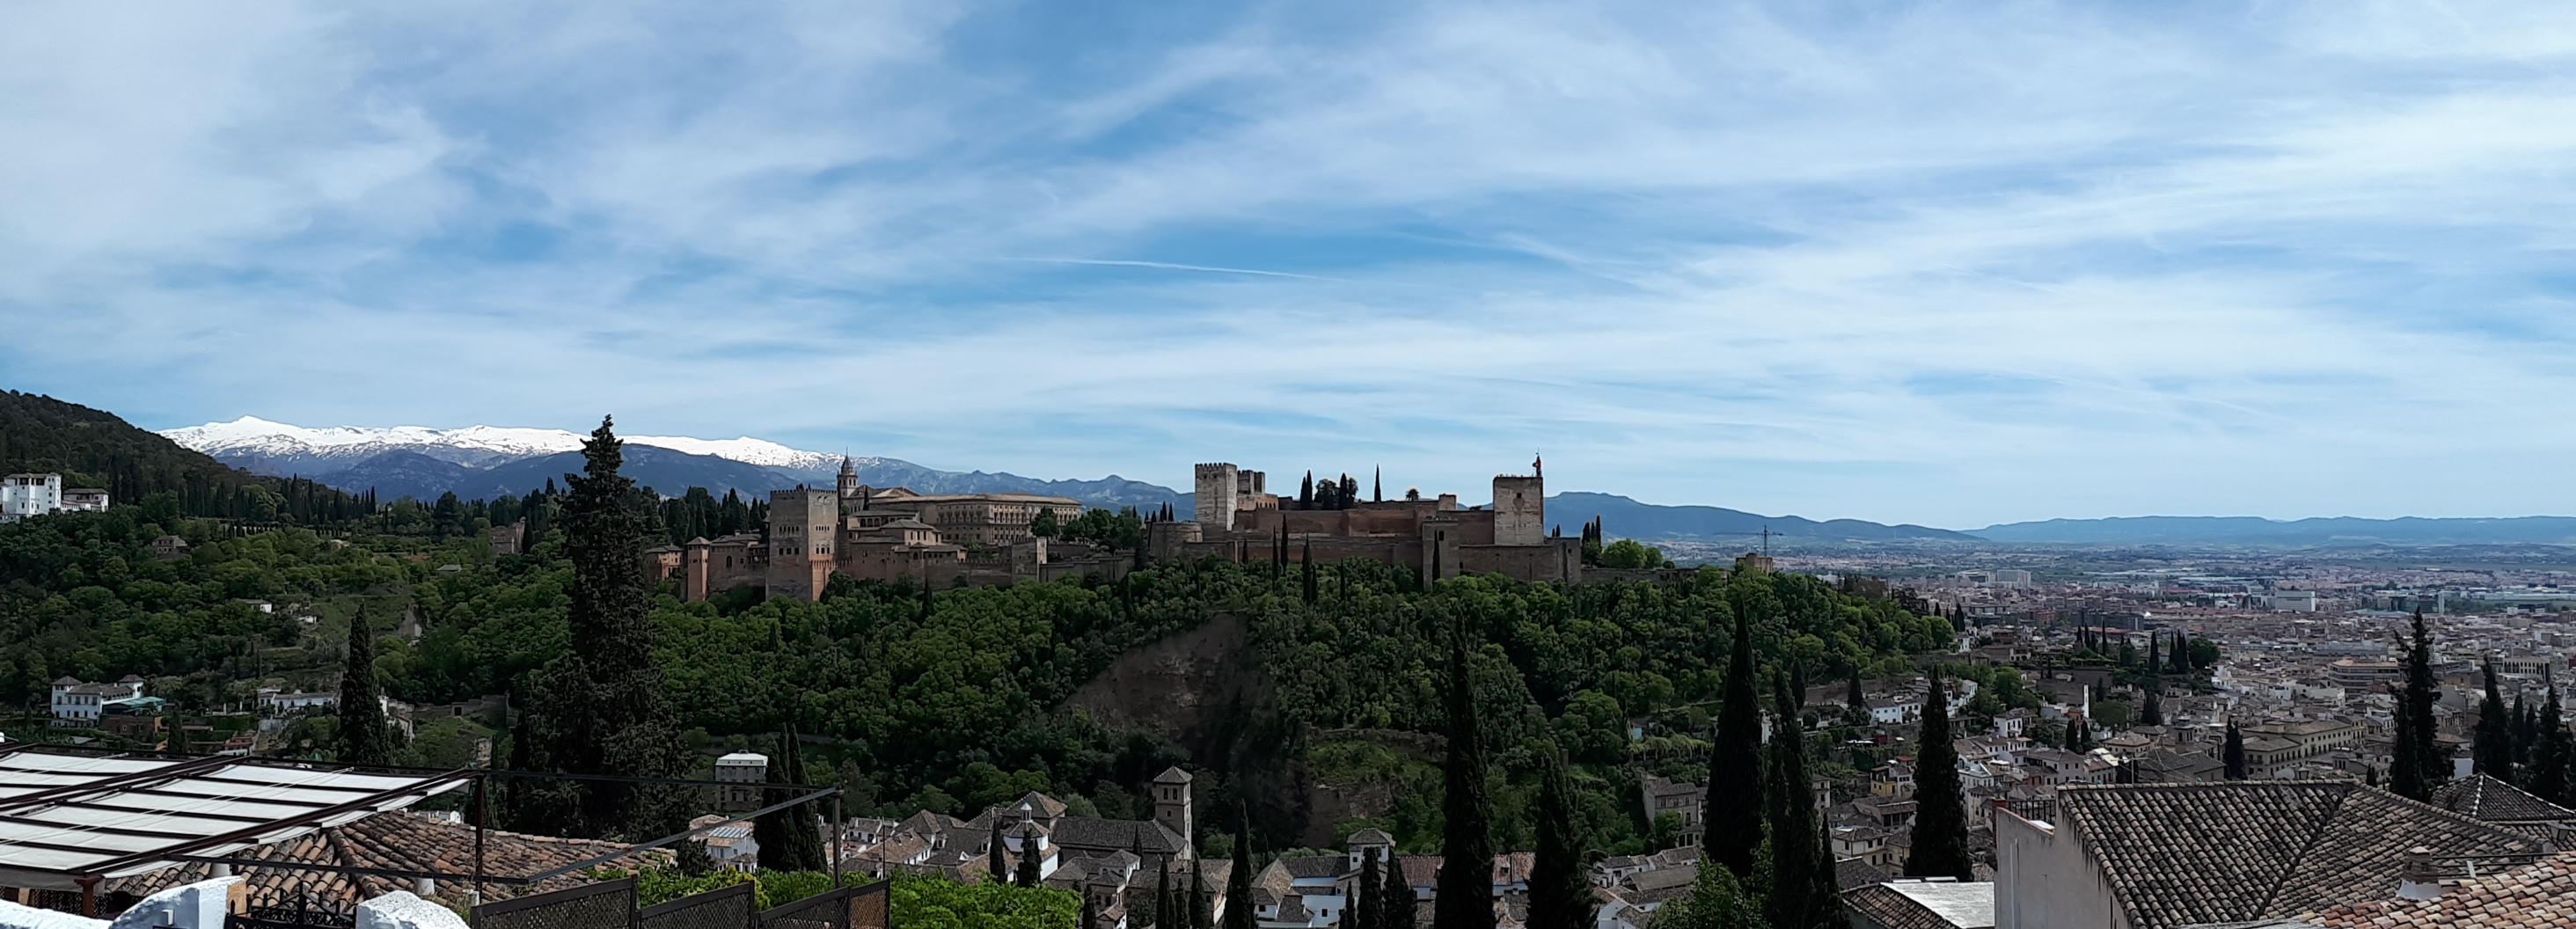 Impresionantes vistas de la ciudad de Granada con la Alhambra y Sierra Nevada al fondo. Se trata de uno de los mejores miradores de Granada y por tanto uno de los imprescindibles de la ciudad.